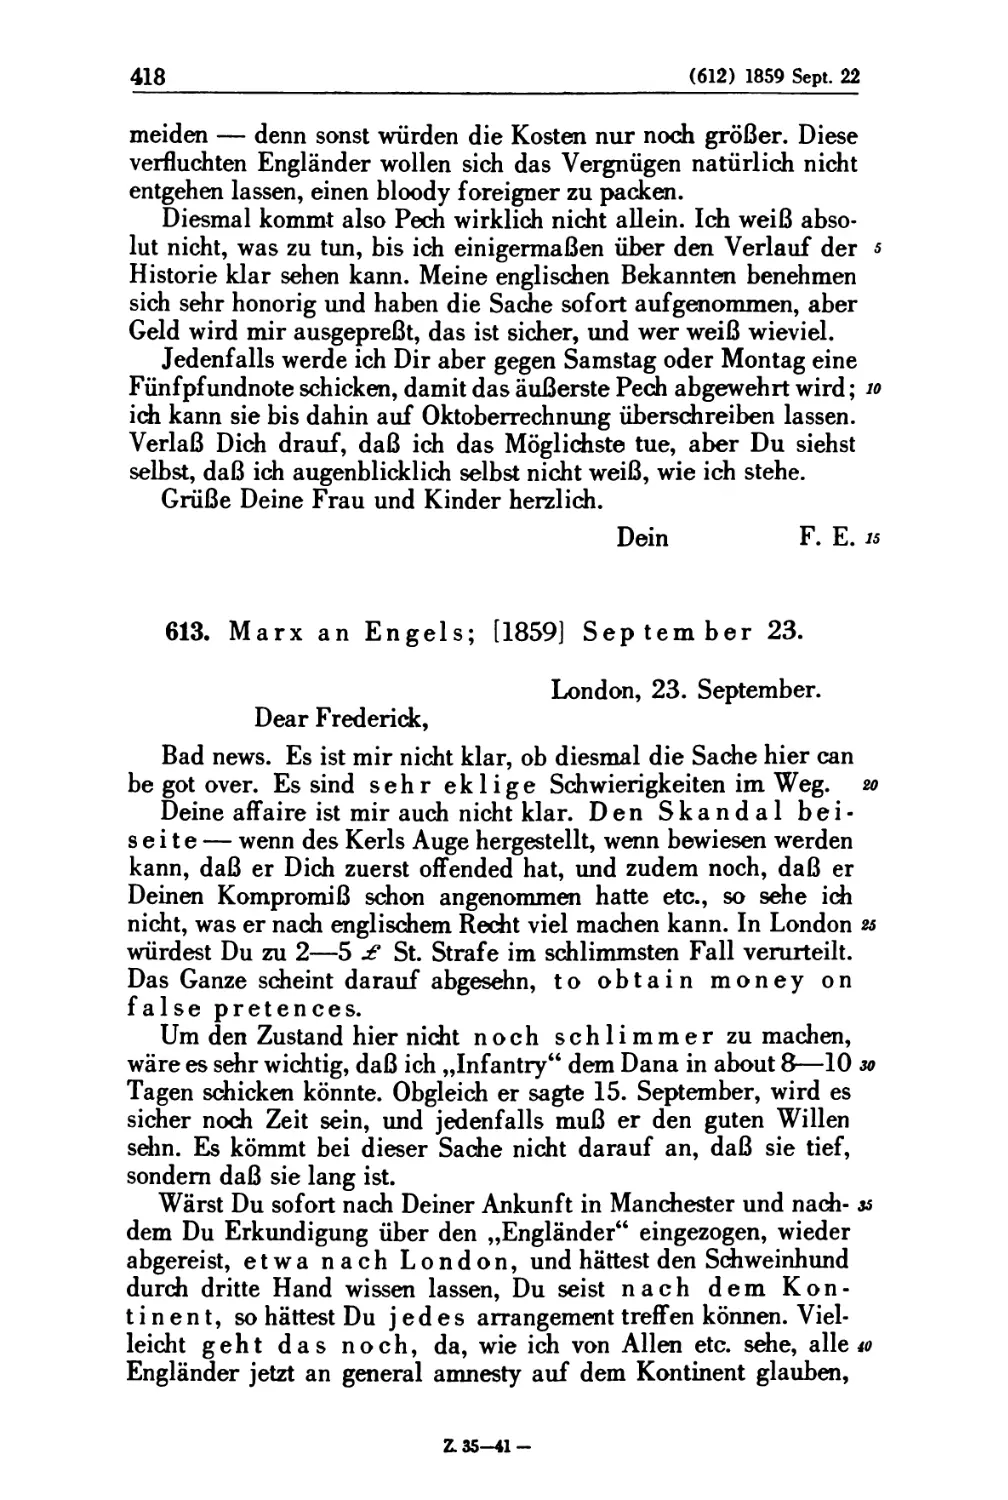 613. Marx an Engels; [1859] September 23